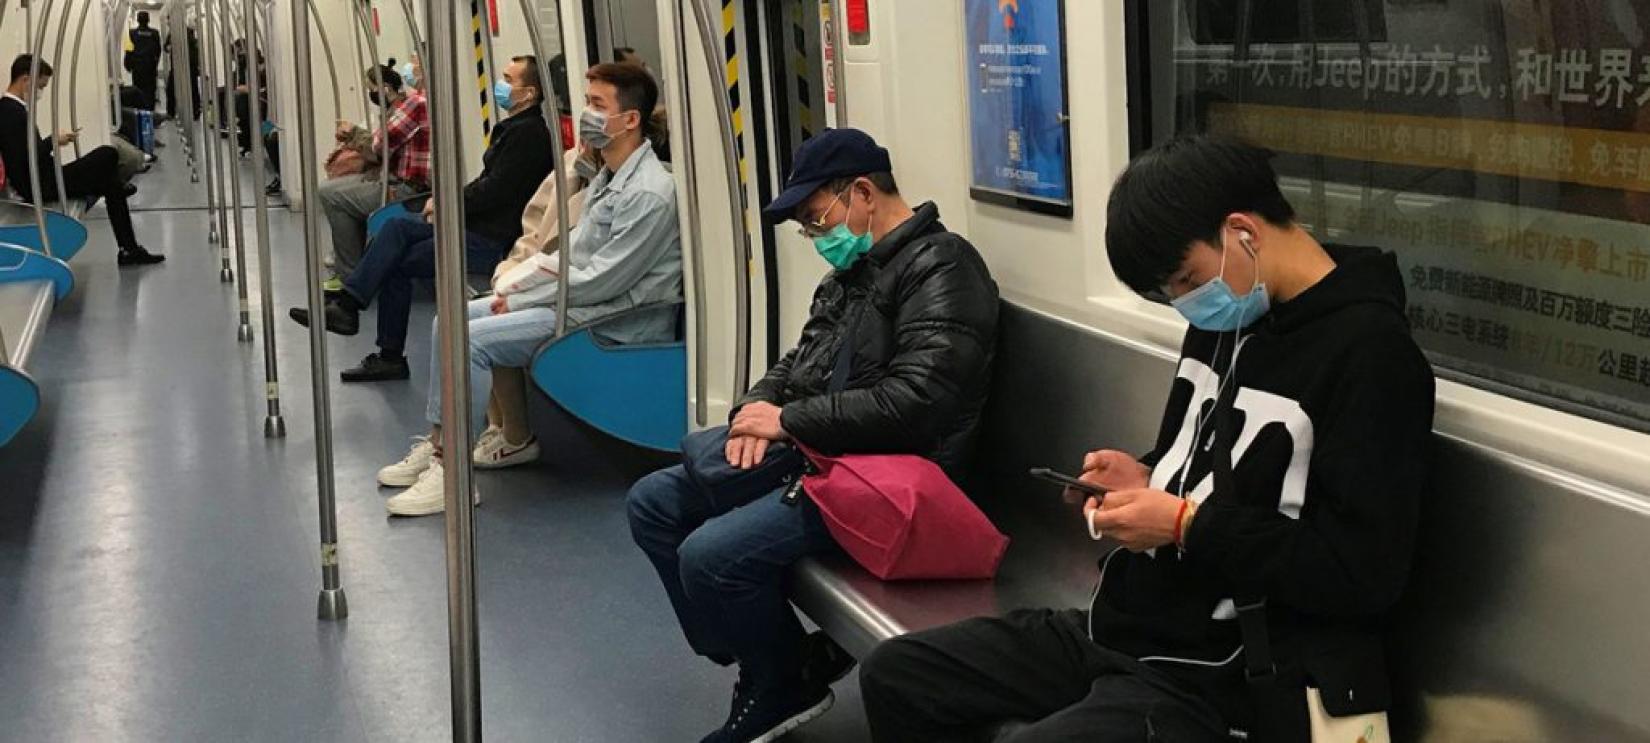 Passageiros usam máscaras no metrô em Shenzhen, China. Foto: ONU/Jing Zhang